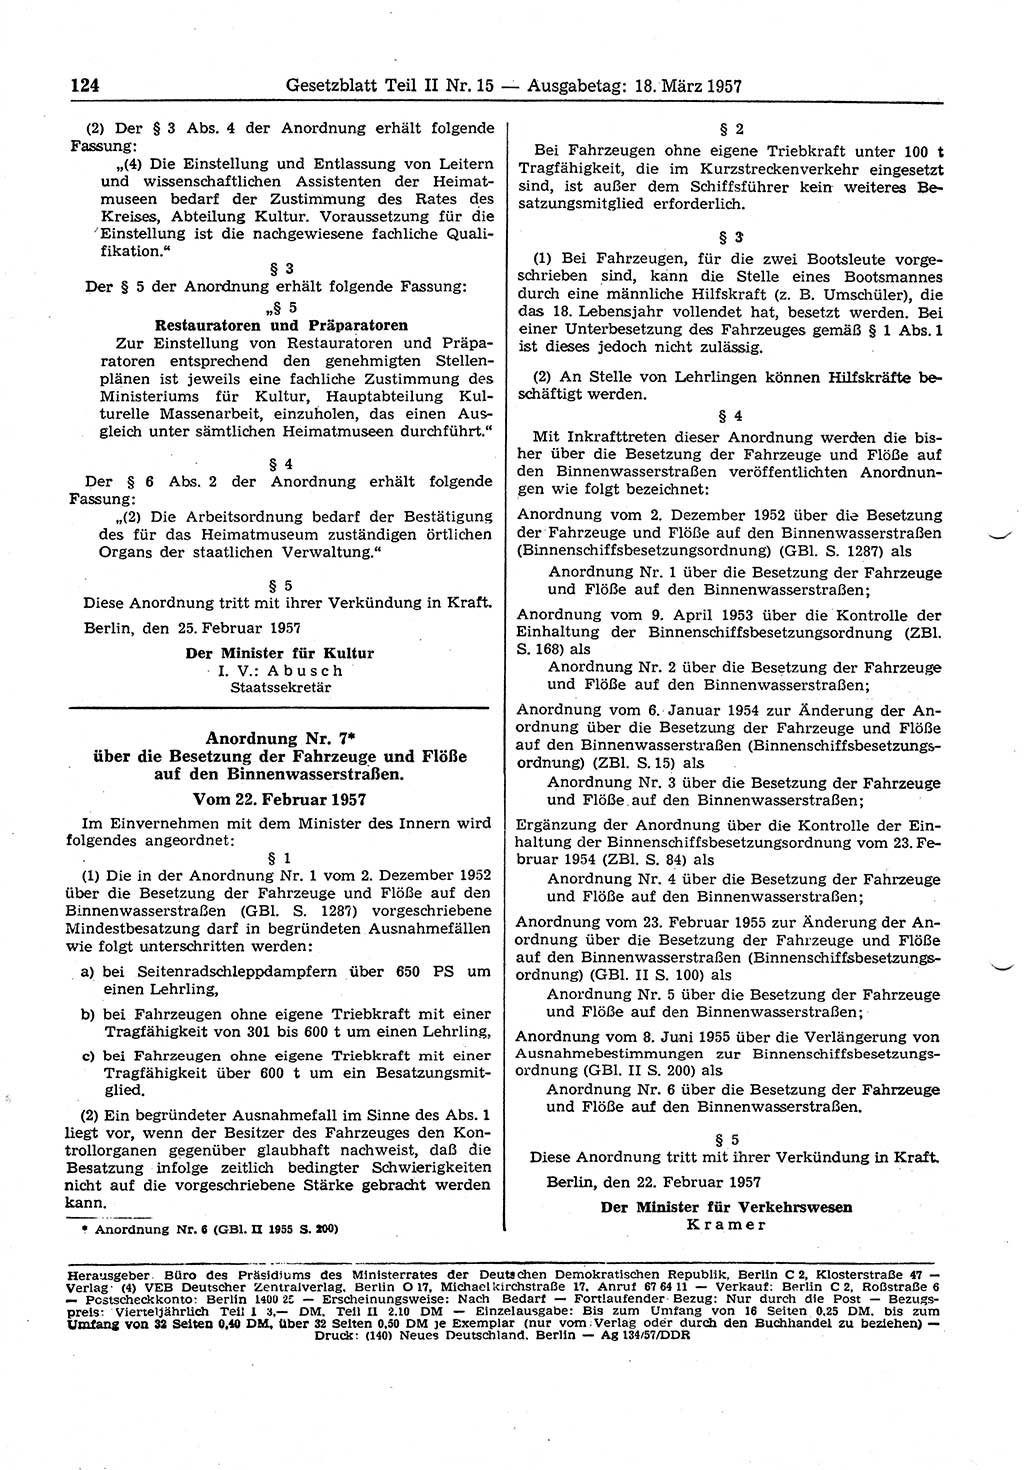 Gesetzblatt (GBl.) der Deutschen Demokratischen Republik (DDR) Teil ⅠⅠ 1957, Seite 124 (GBl. DDR ⅠⅠ 1957, S. 124)